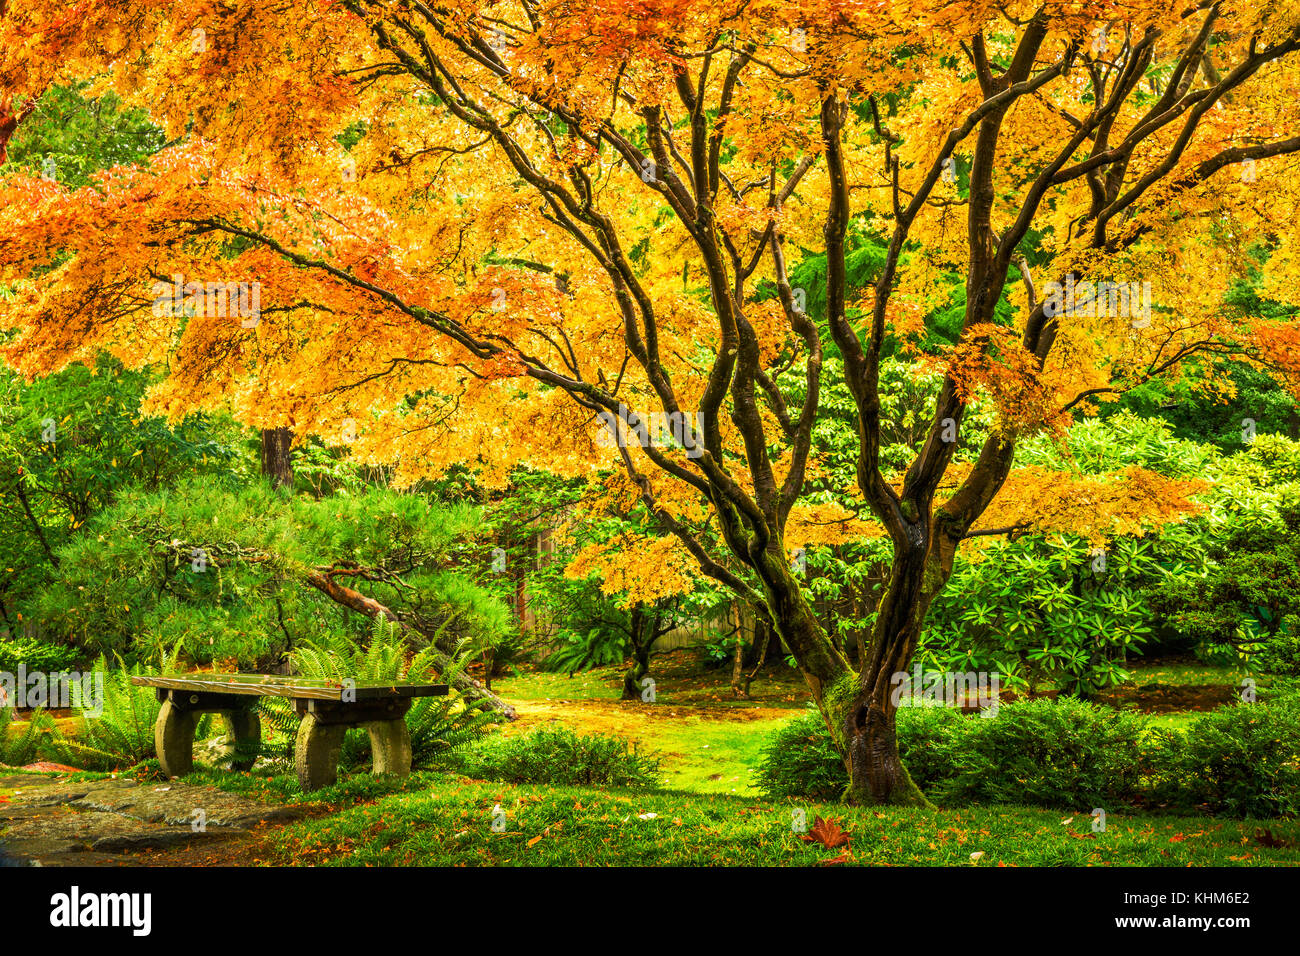 Japanese maple tree avec feuillage d'automne doré à côté d'un banc vide à Seattle à Washington Park Arboretum Botanical garden Banque D'Images